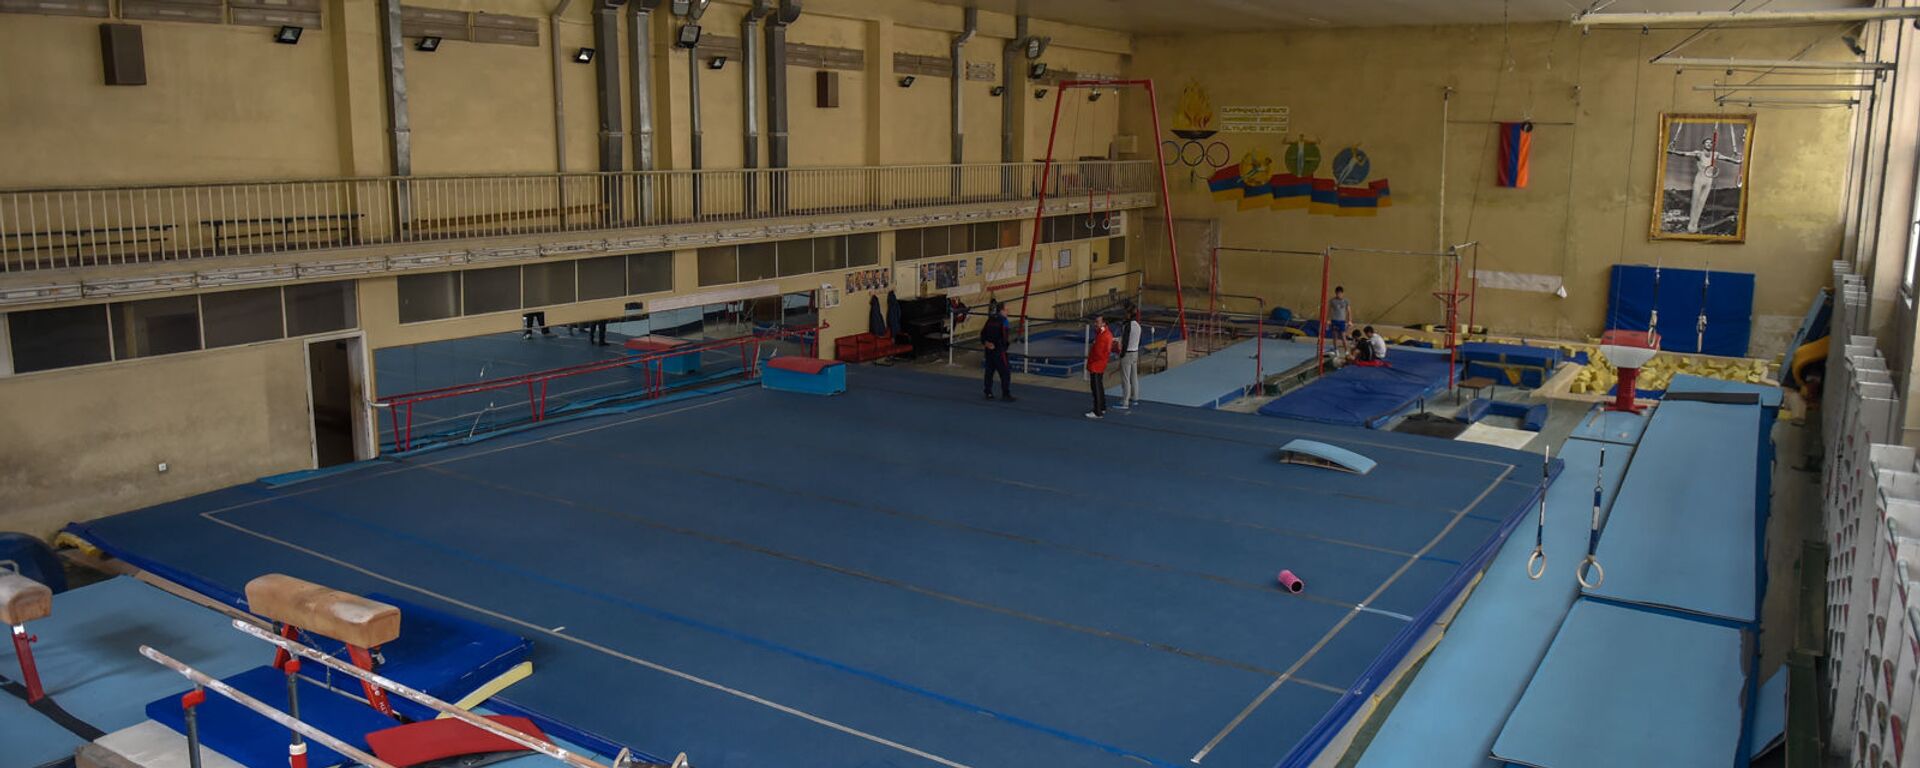 Тренировочный зал в школе олимпийского резерва по гимнастике имени Альберта Азаряна - Sputnik Армения, 1920, 16.09.2020